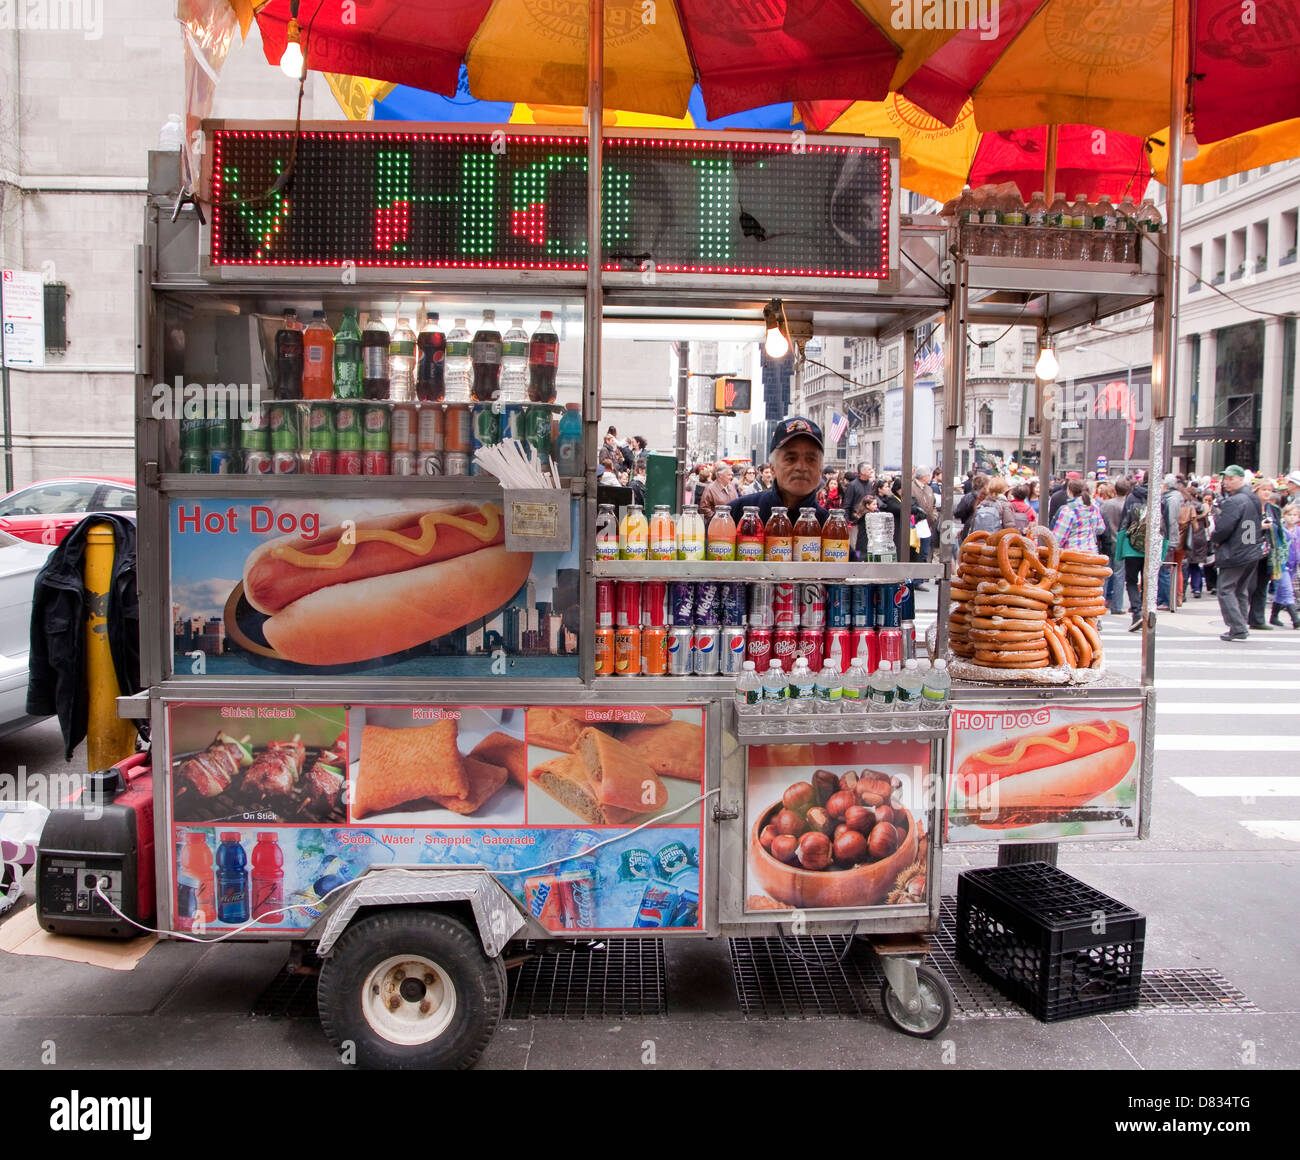 Streetfood Anbieter in Midtown Manhattan Brezeln, Bande, Schaschlik, Rindfleisch Burger, Hotdogs, Soda in einem mobilen Wagen zu verkaufen. Stockfoto